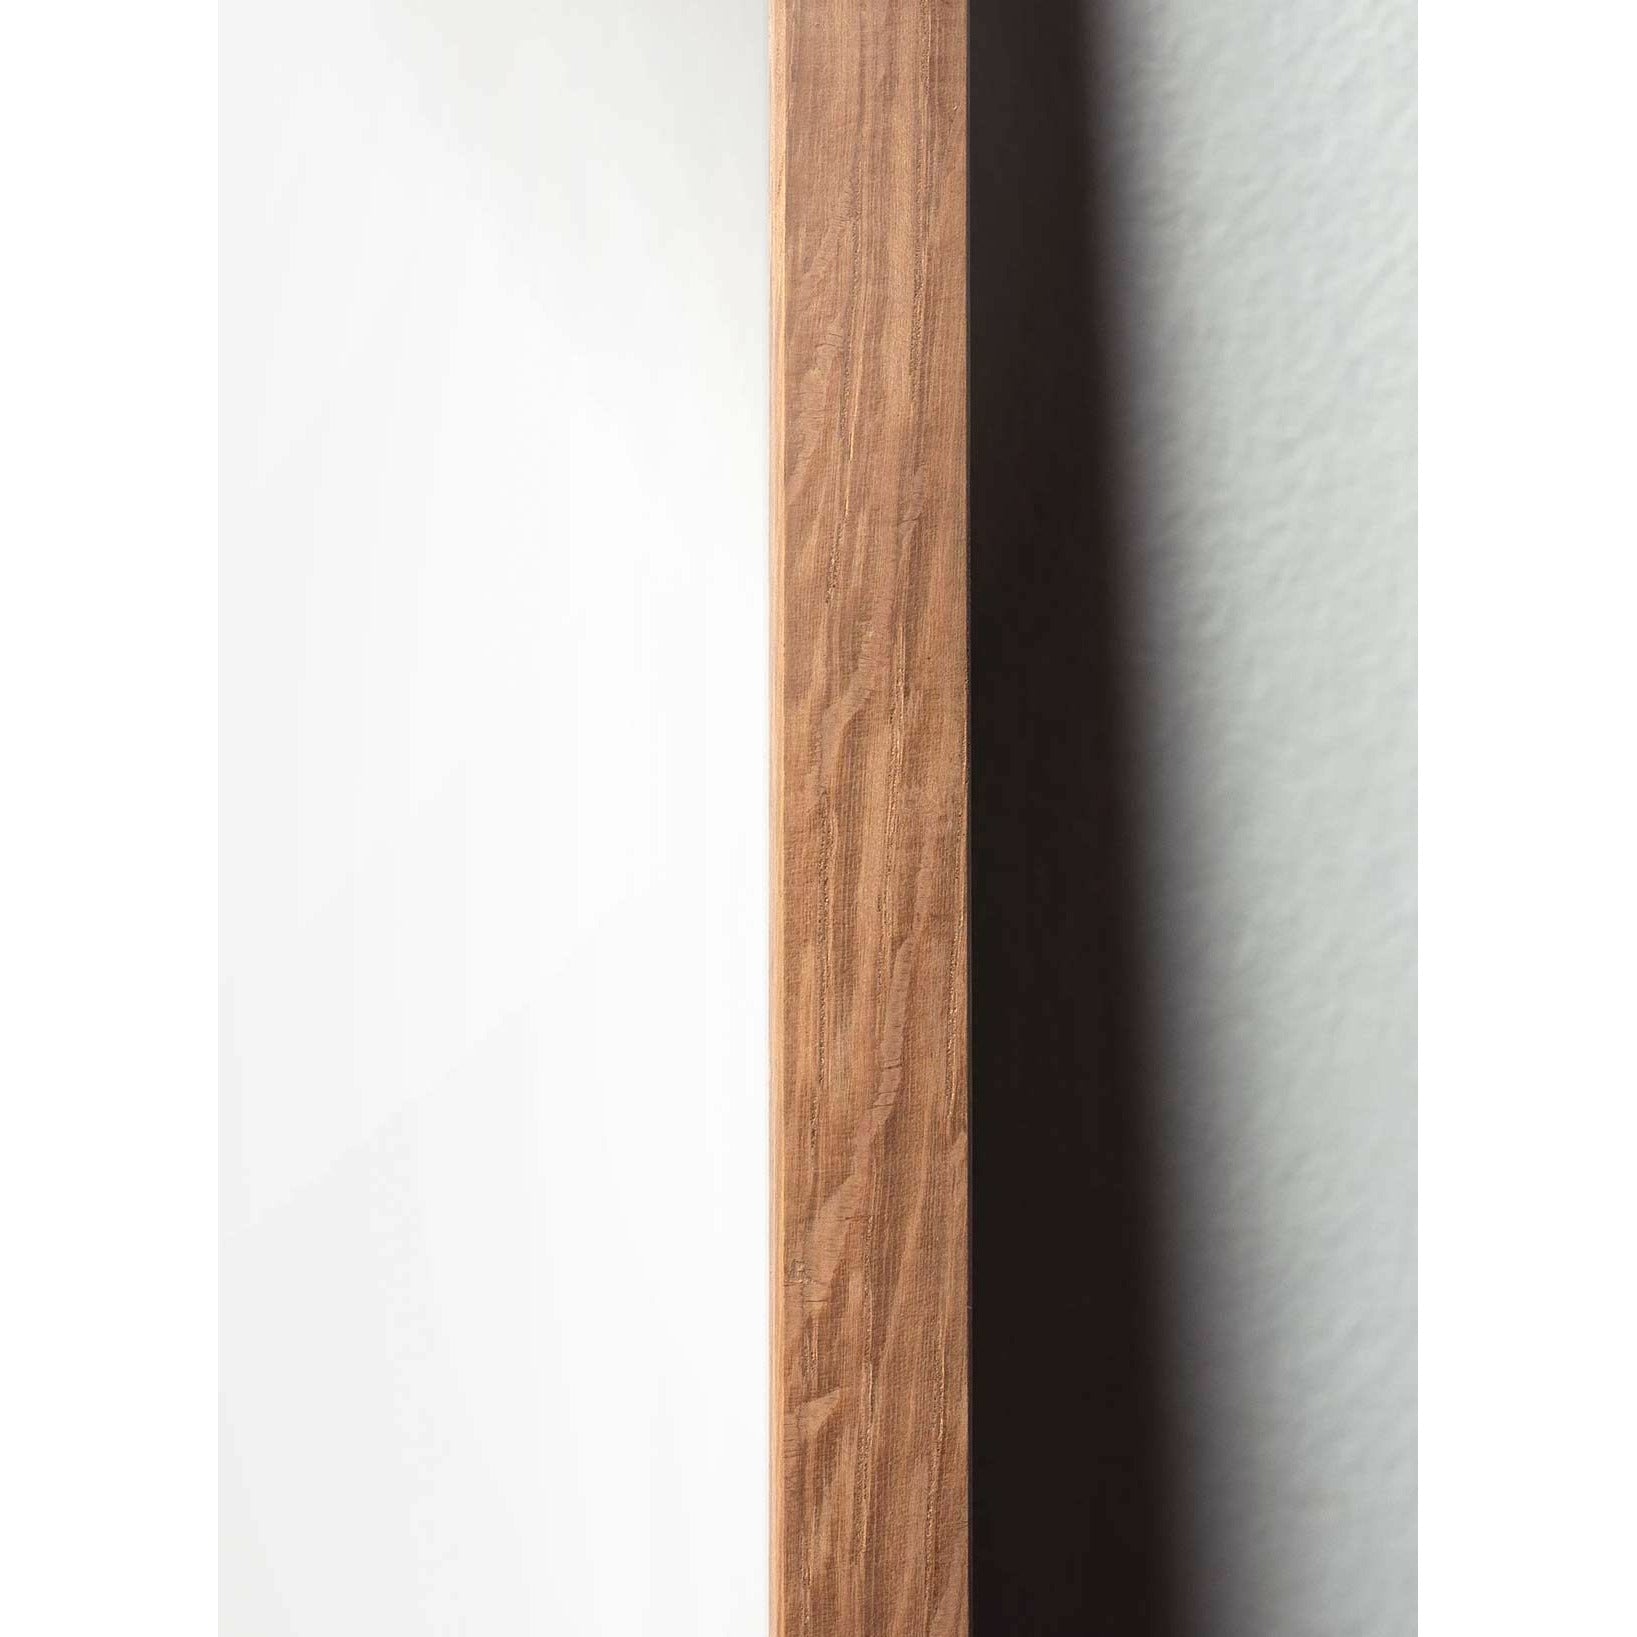 Brainchild Affiche de la ligne de fourmi, cadre en bois clair 30x40 cm, fond blanc